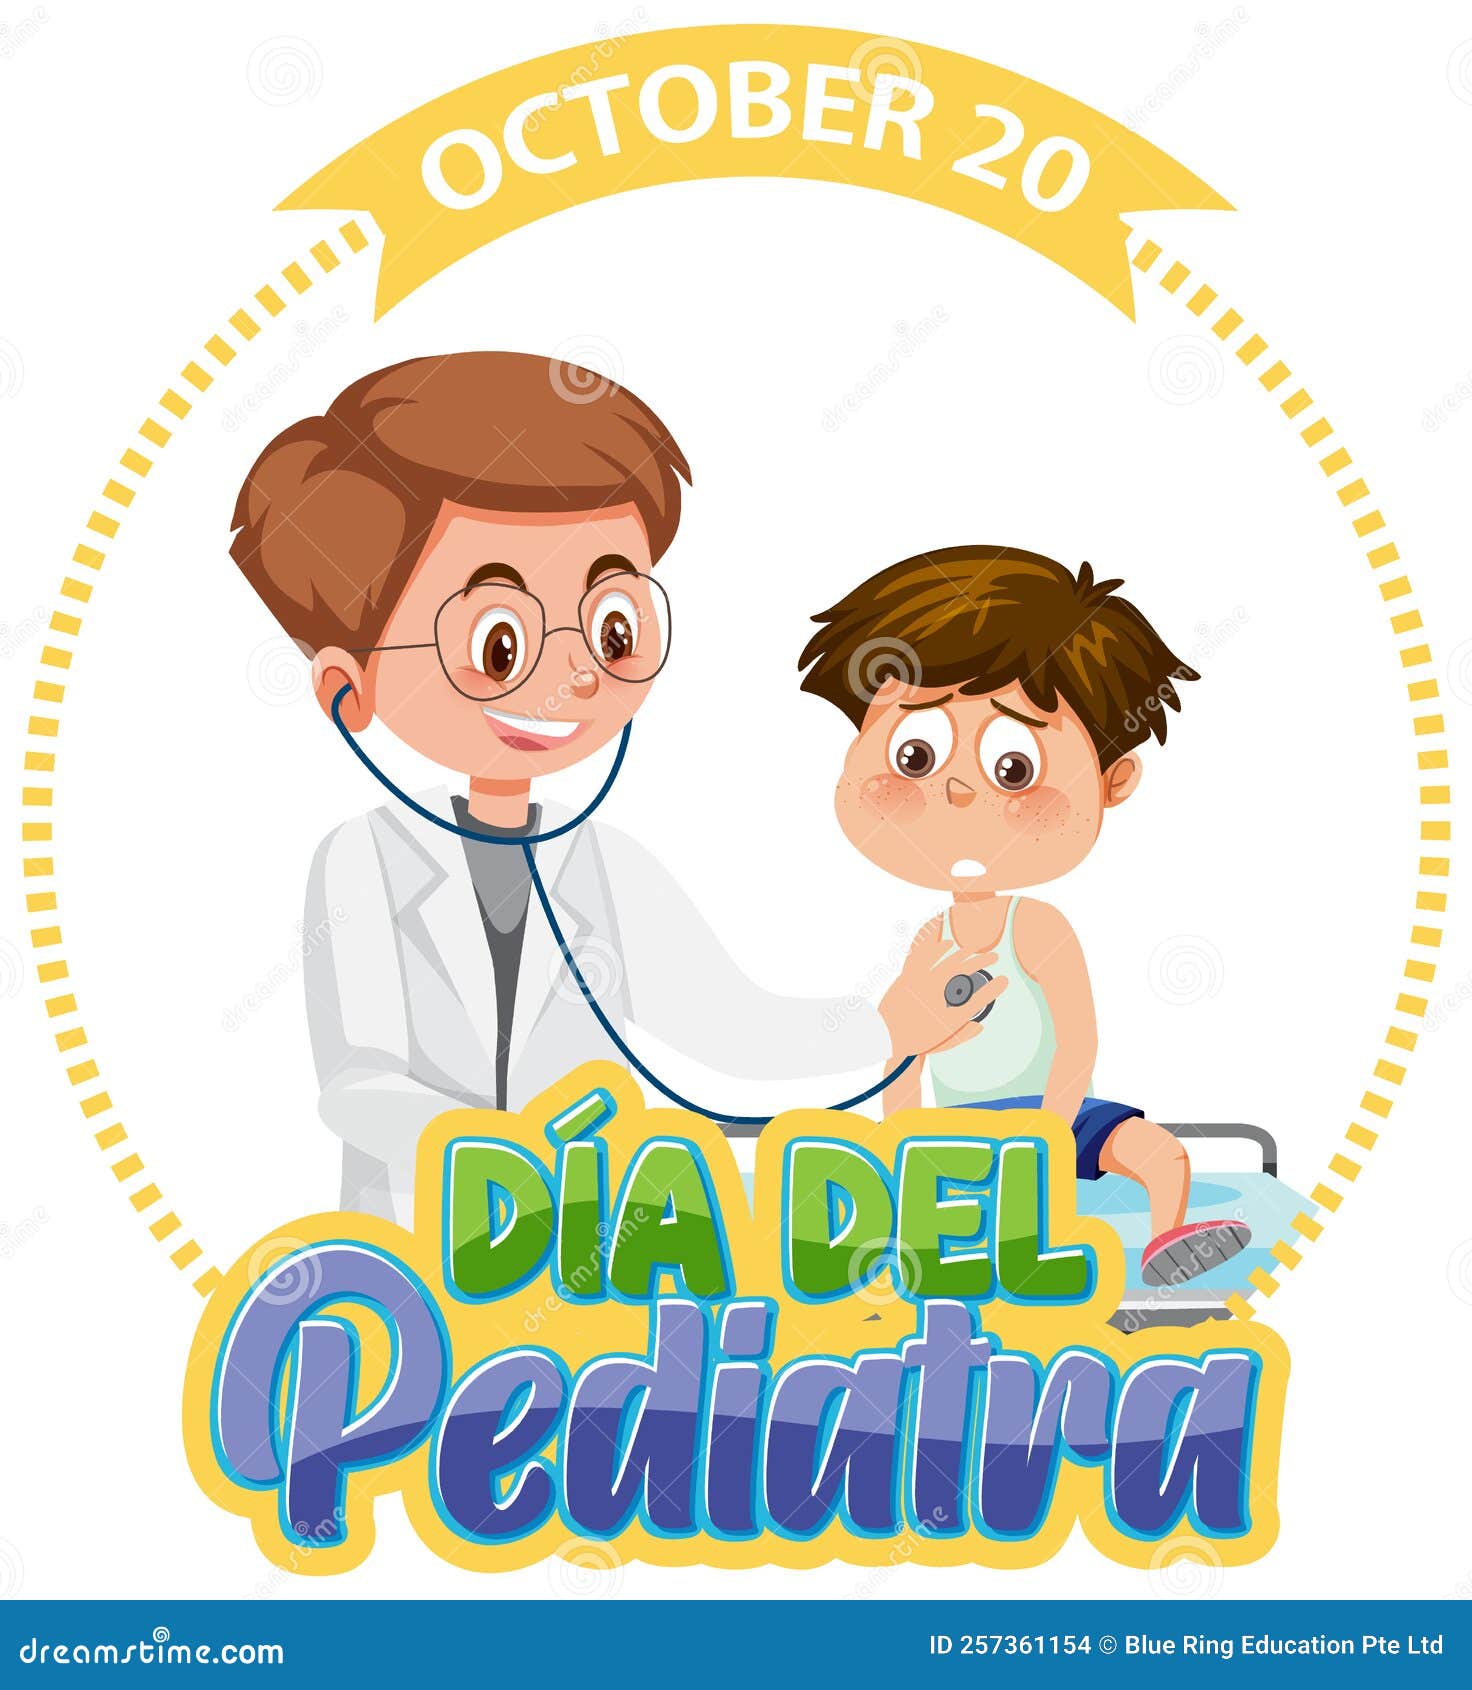 dÃÂ­a del pediatra text with cartoon character